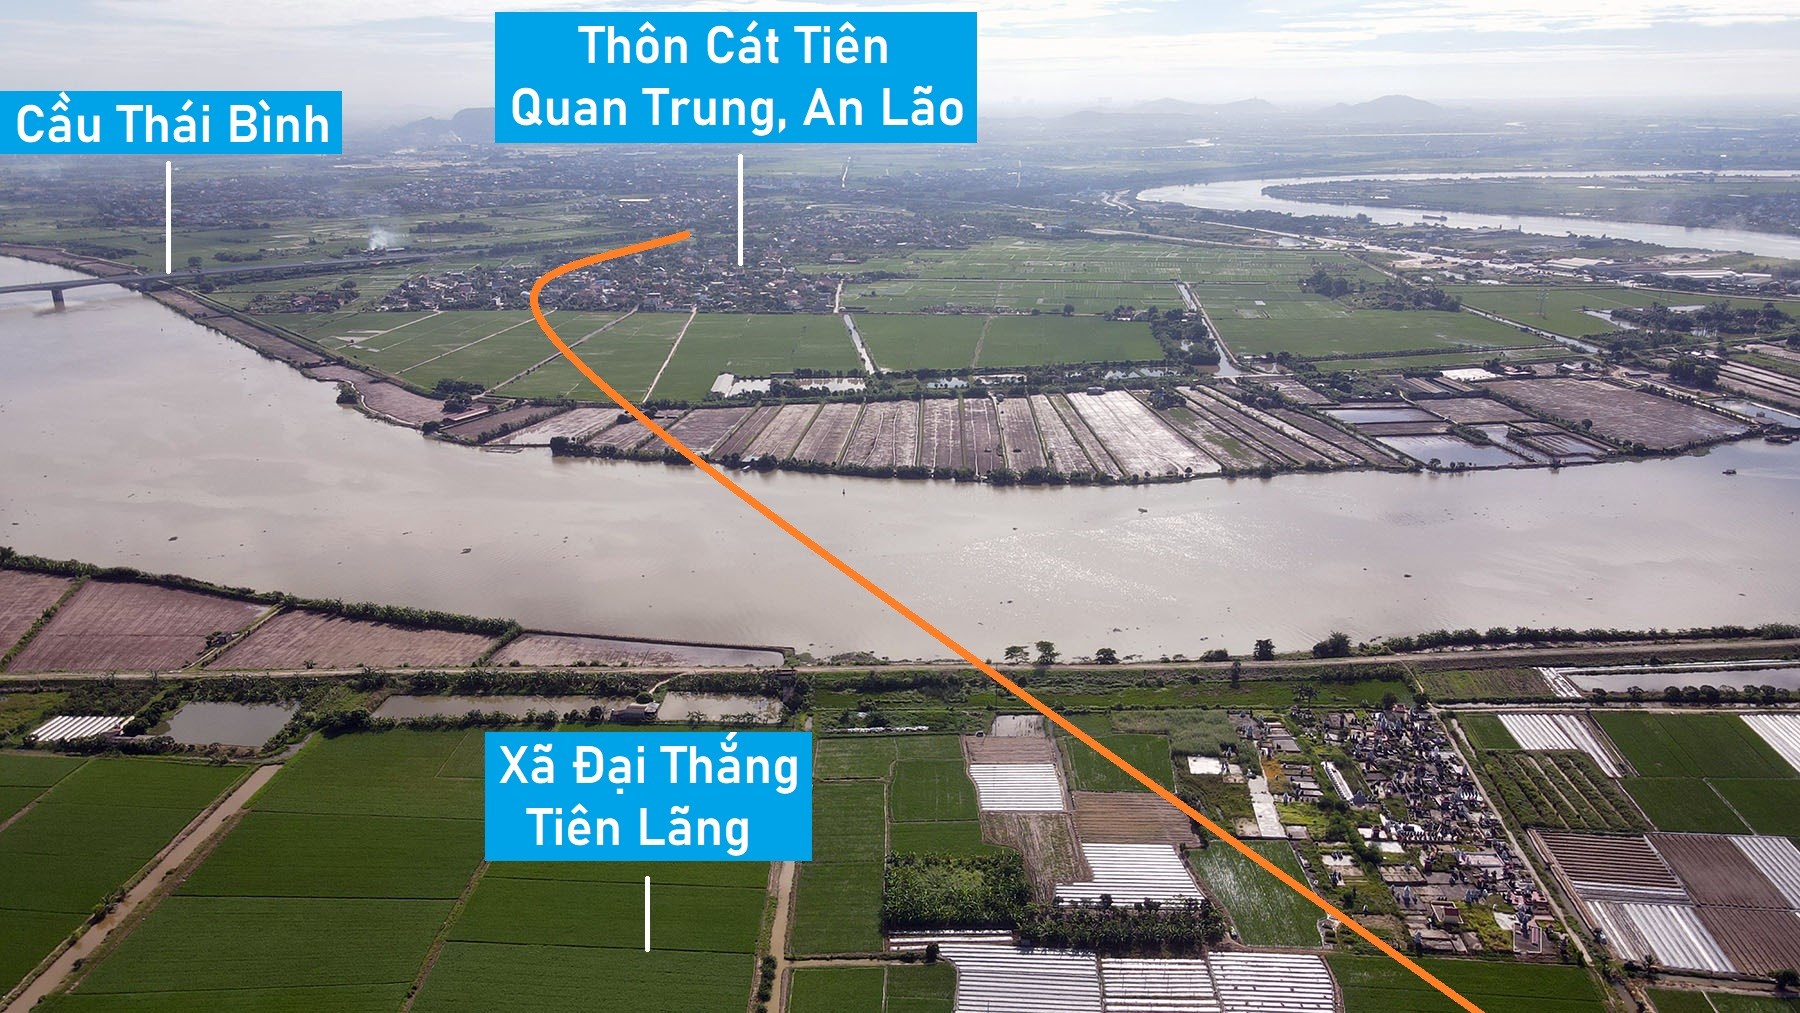 Toàn cảnh vị trí có thể xây cầu đường sắt vượt sông Văn Úc nối huyện Tiên Lãng - An Lão, Hải Phòng